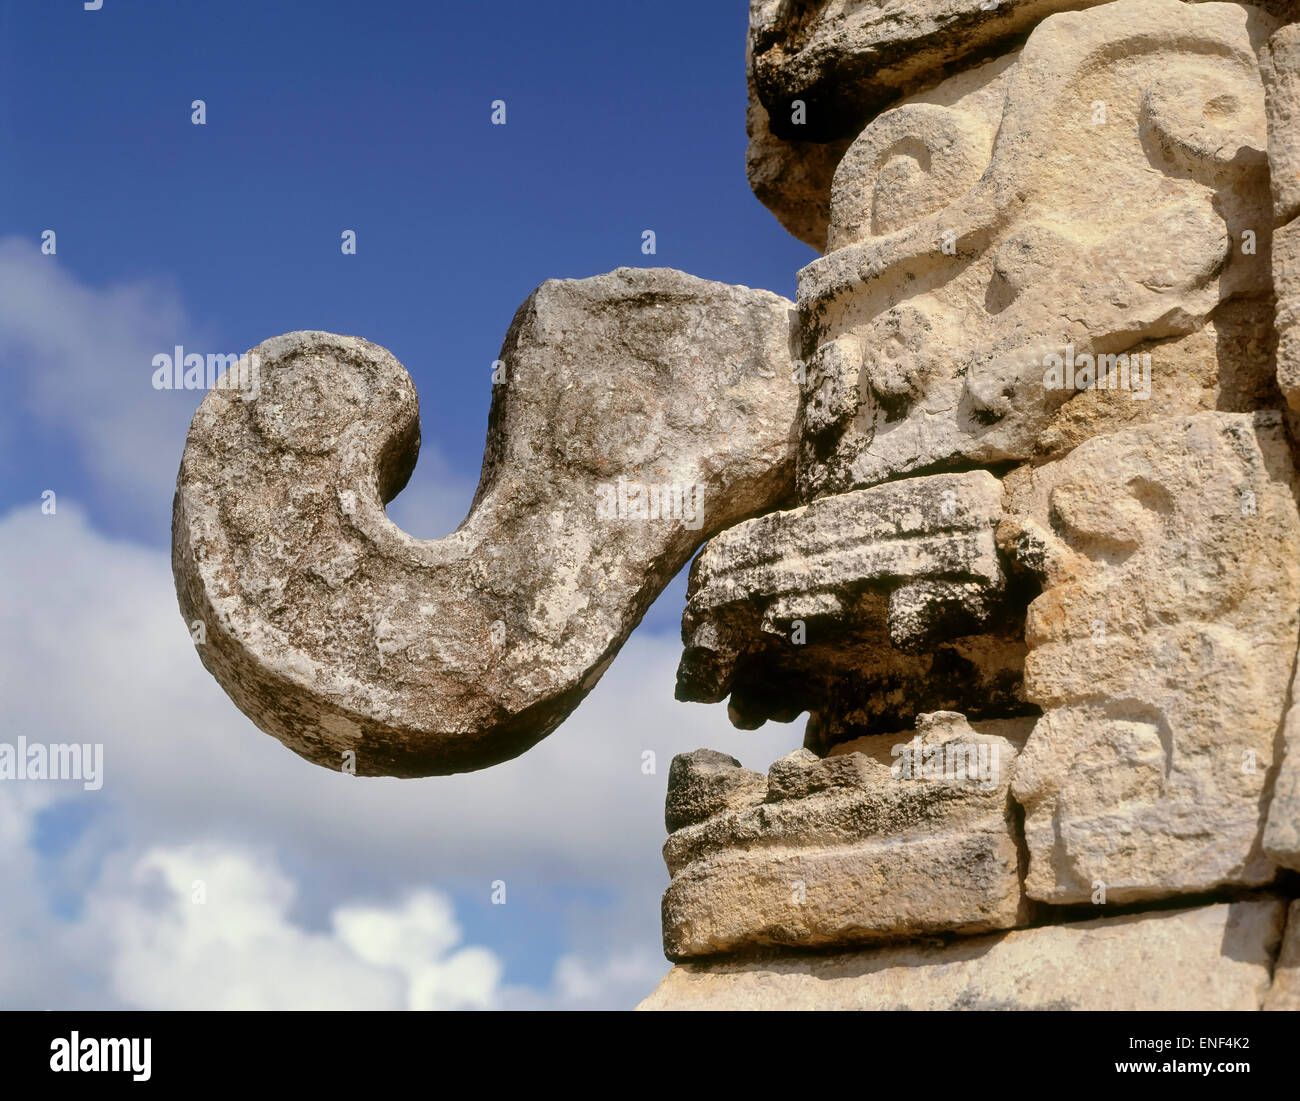 Chichen Itzá, Yucatán, México. Máscara del dios de la lluvia Chaac. La ciudad prehispánica de Chichen Itzá es un sitio del Patrimonio Mundial de la UNESCO Foto de stock